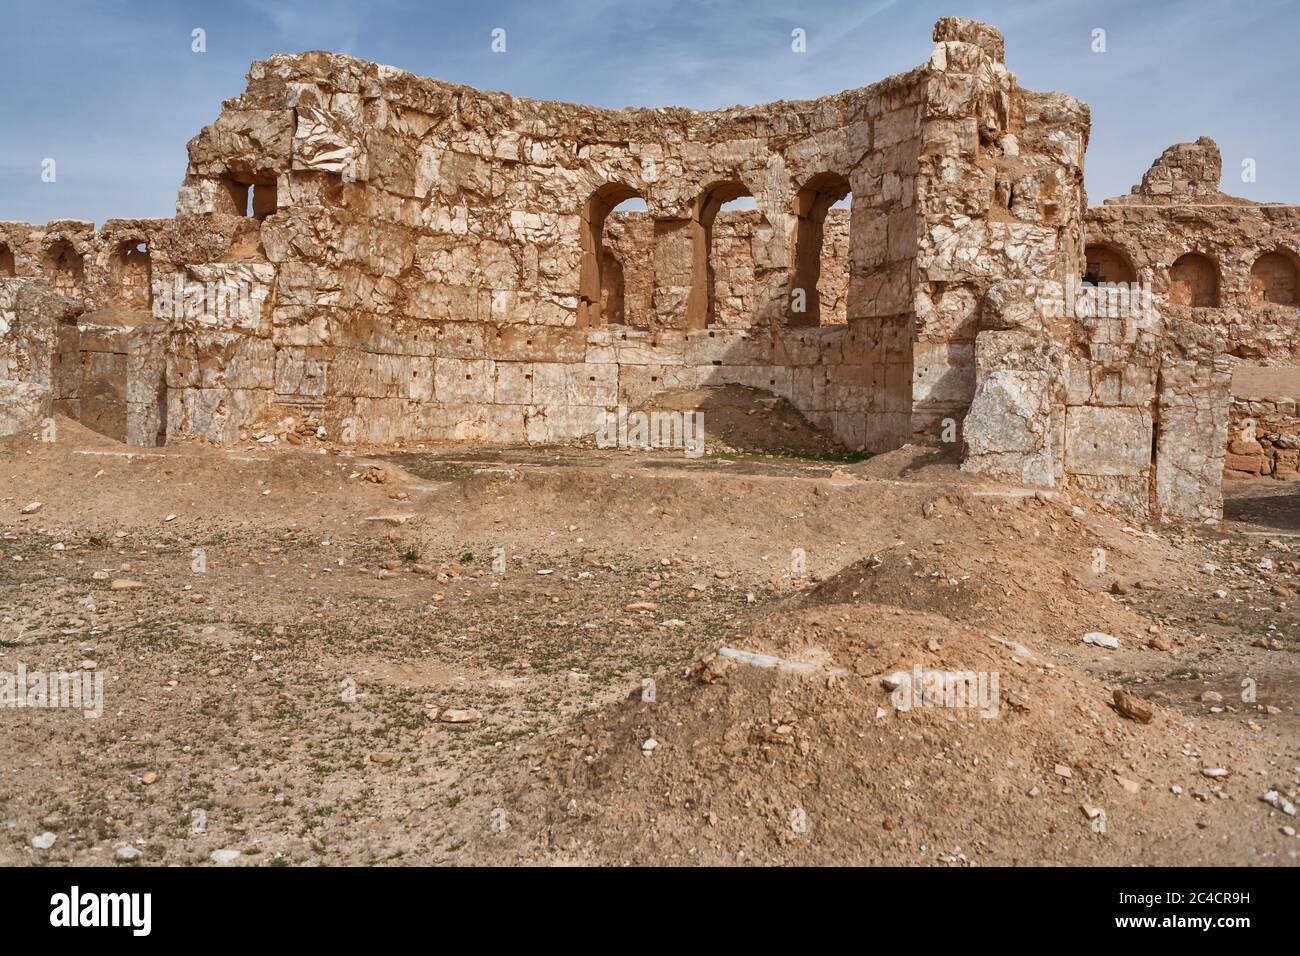 Resafa, Sergiopolis, cerca de Ar Raqqah, ciudad romana y bizantina en el desierto, Siria Foto de stock